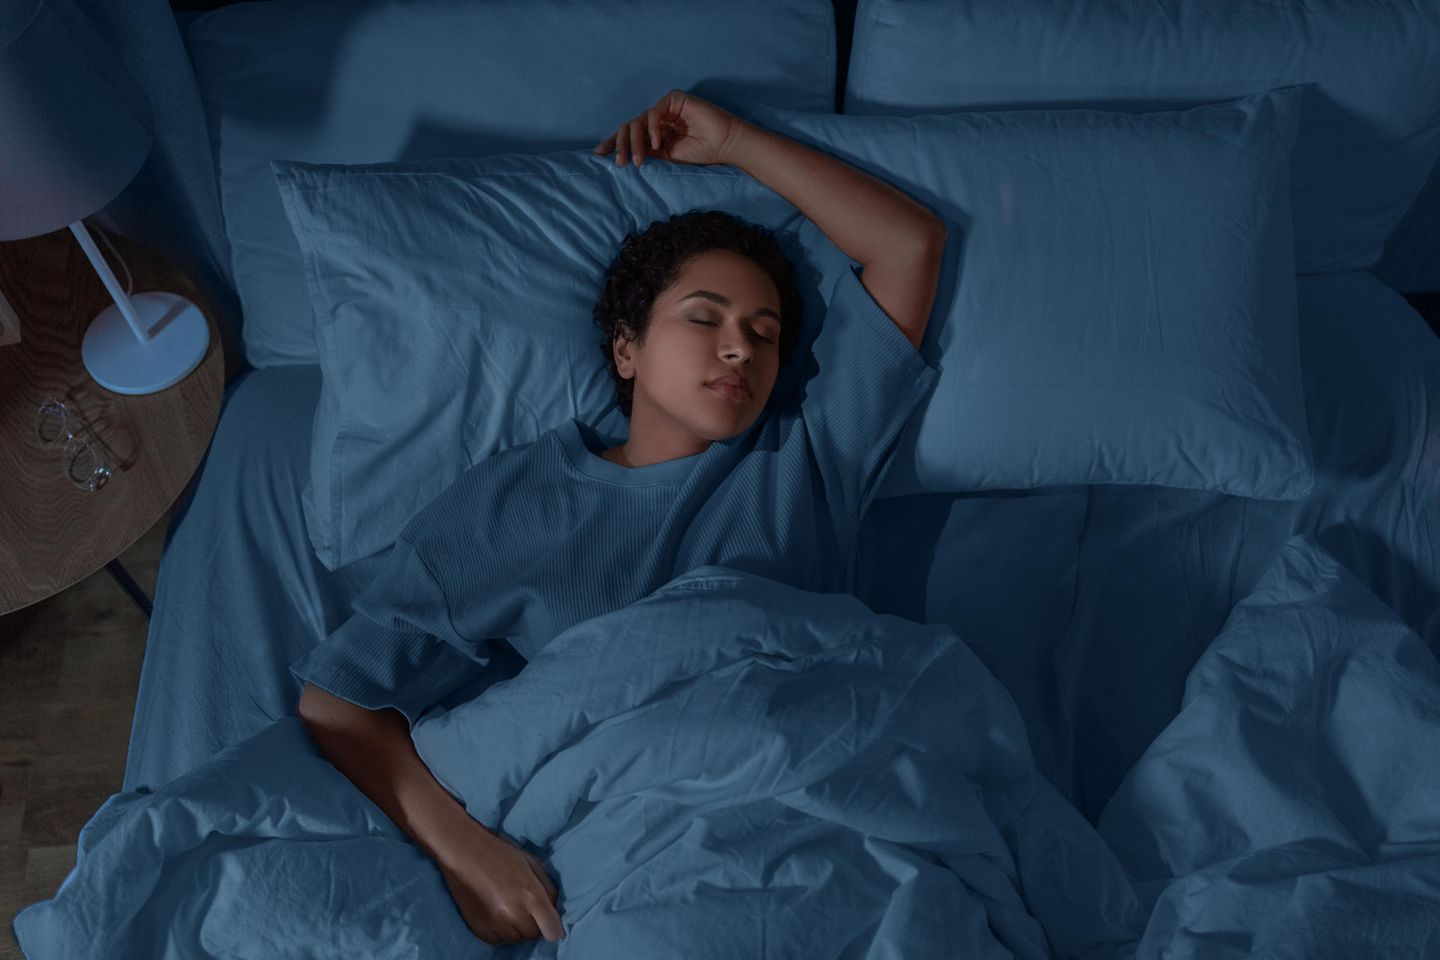 Schlaftipps: Frau im Bett am schlafen